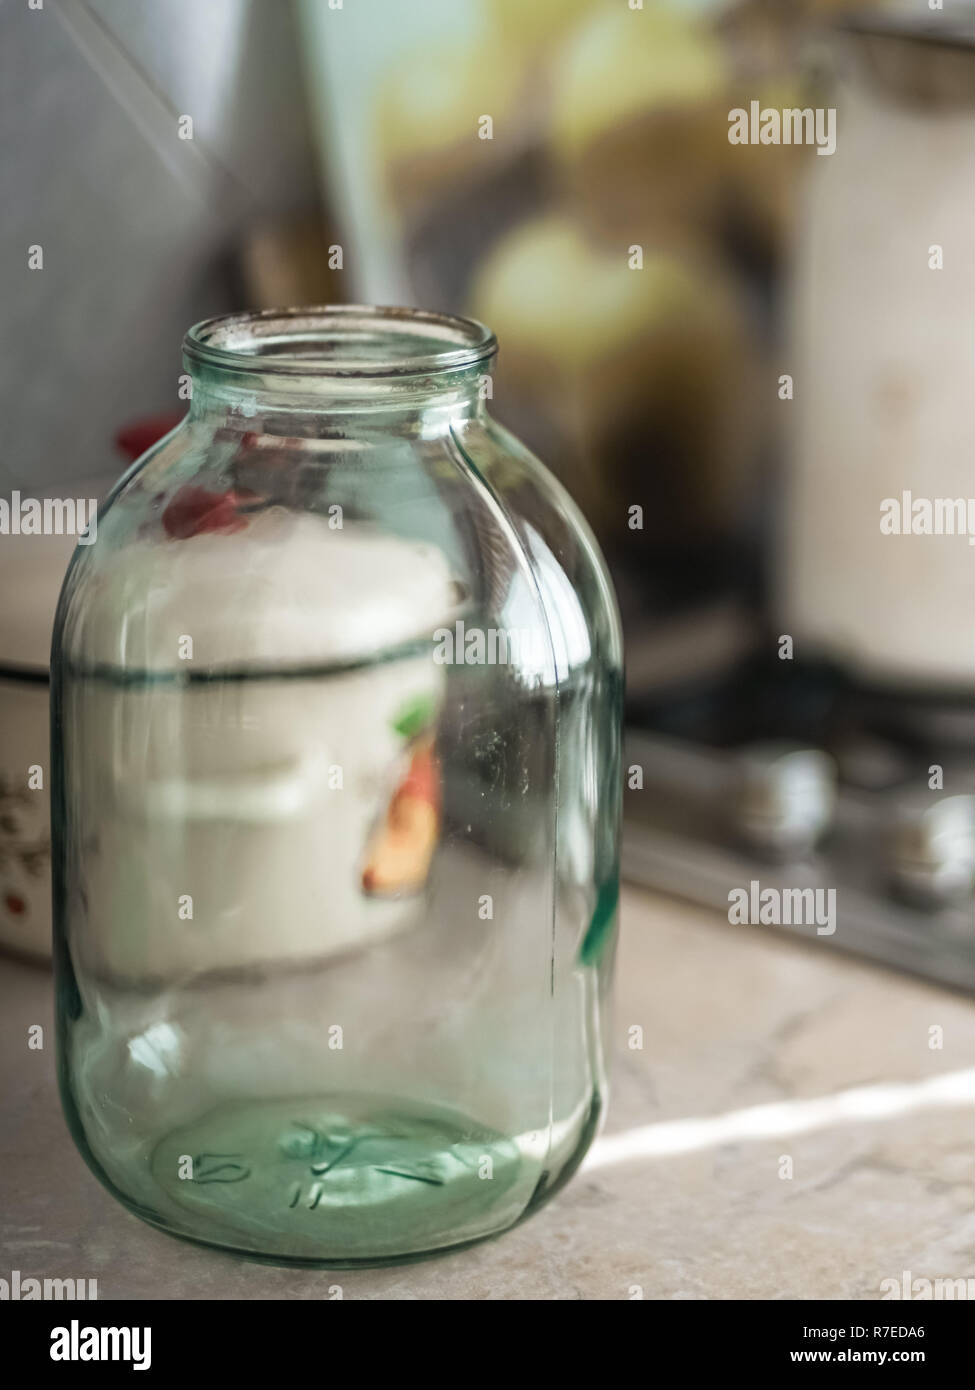 Leere 3-Liter Glas steht auf dem Tisch Stockfotografie - Alamy